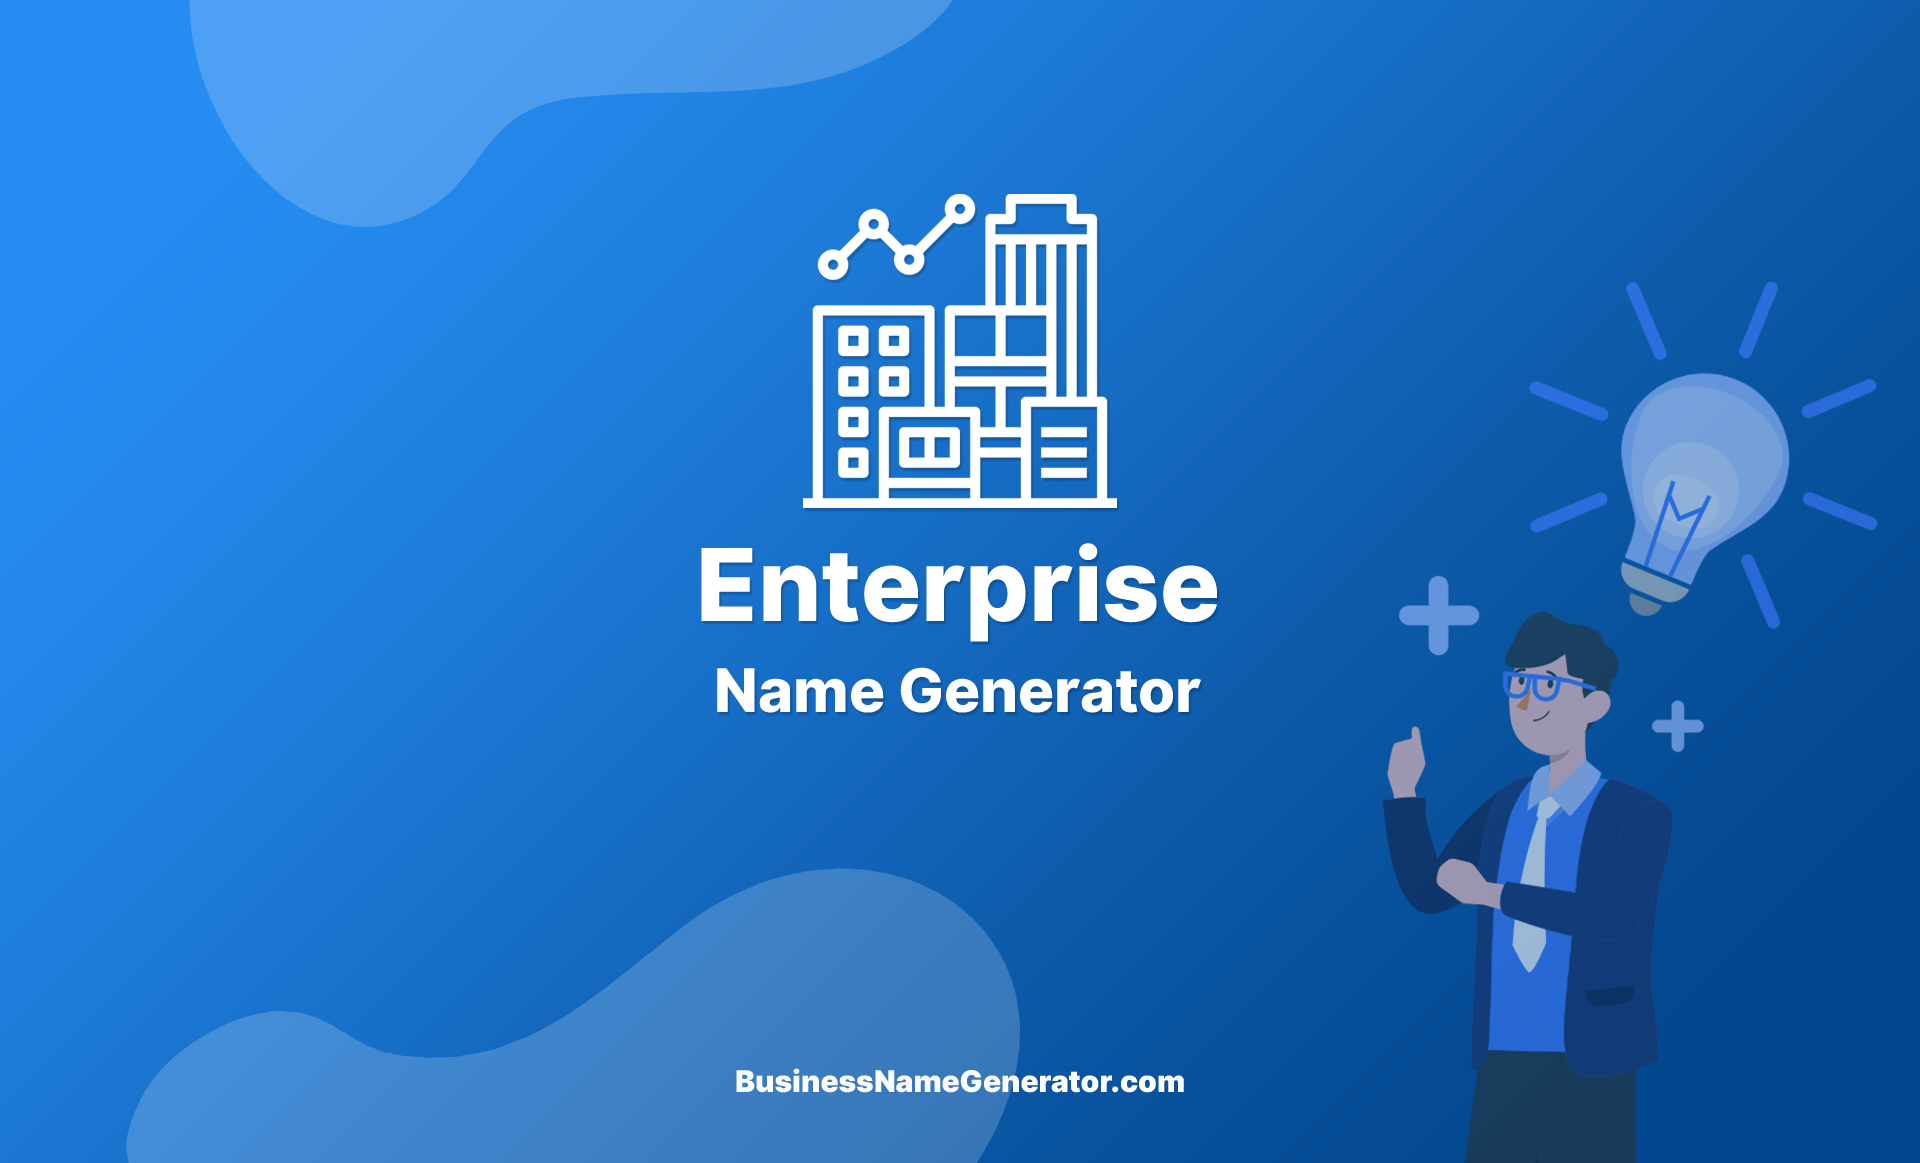 Enterprise Name Generator